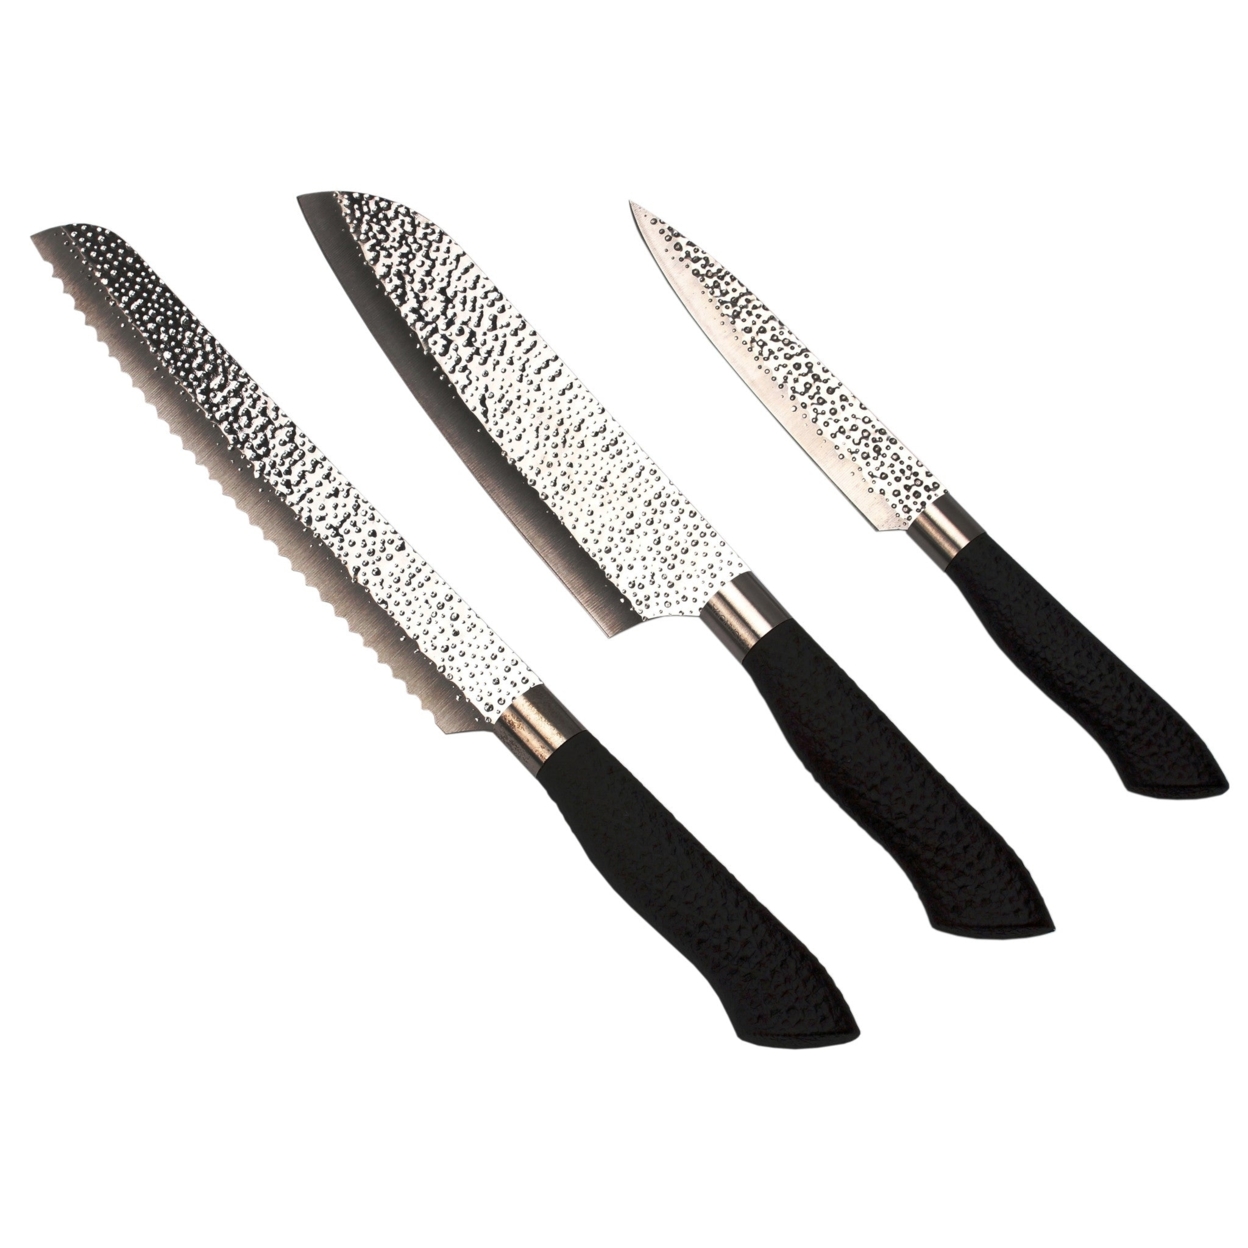 Embossed Hammered Blades 3 Piece Knife Set